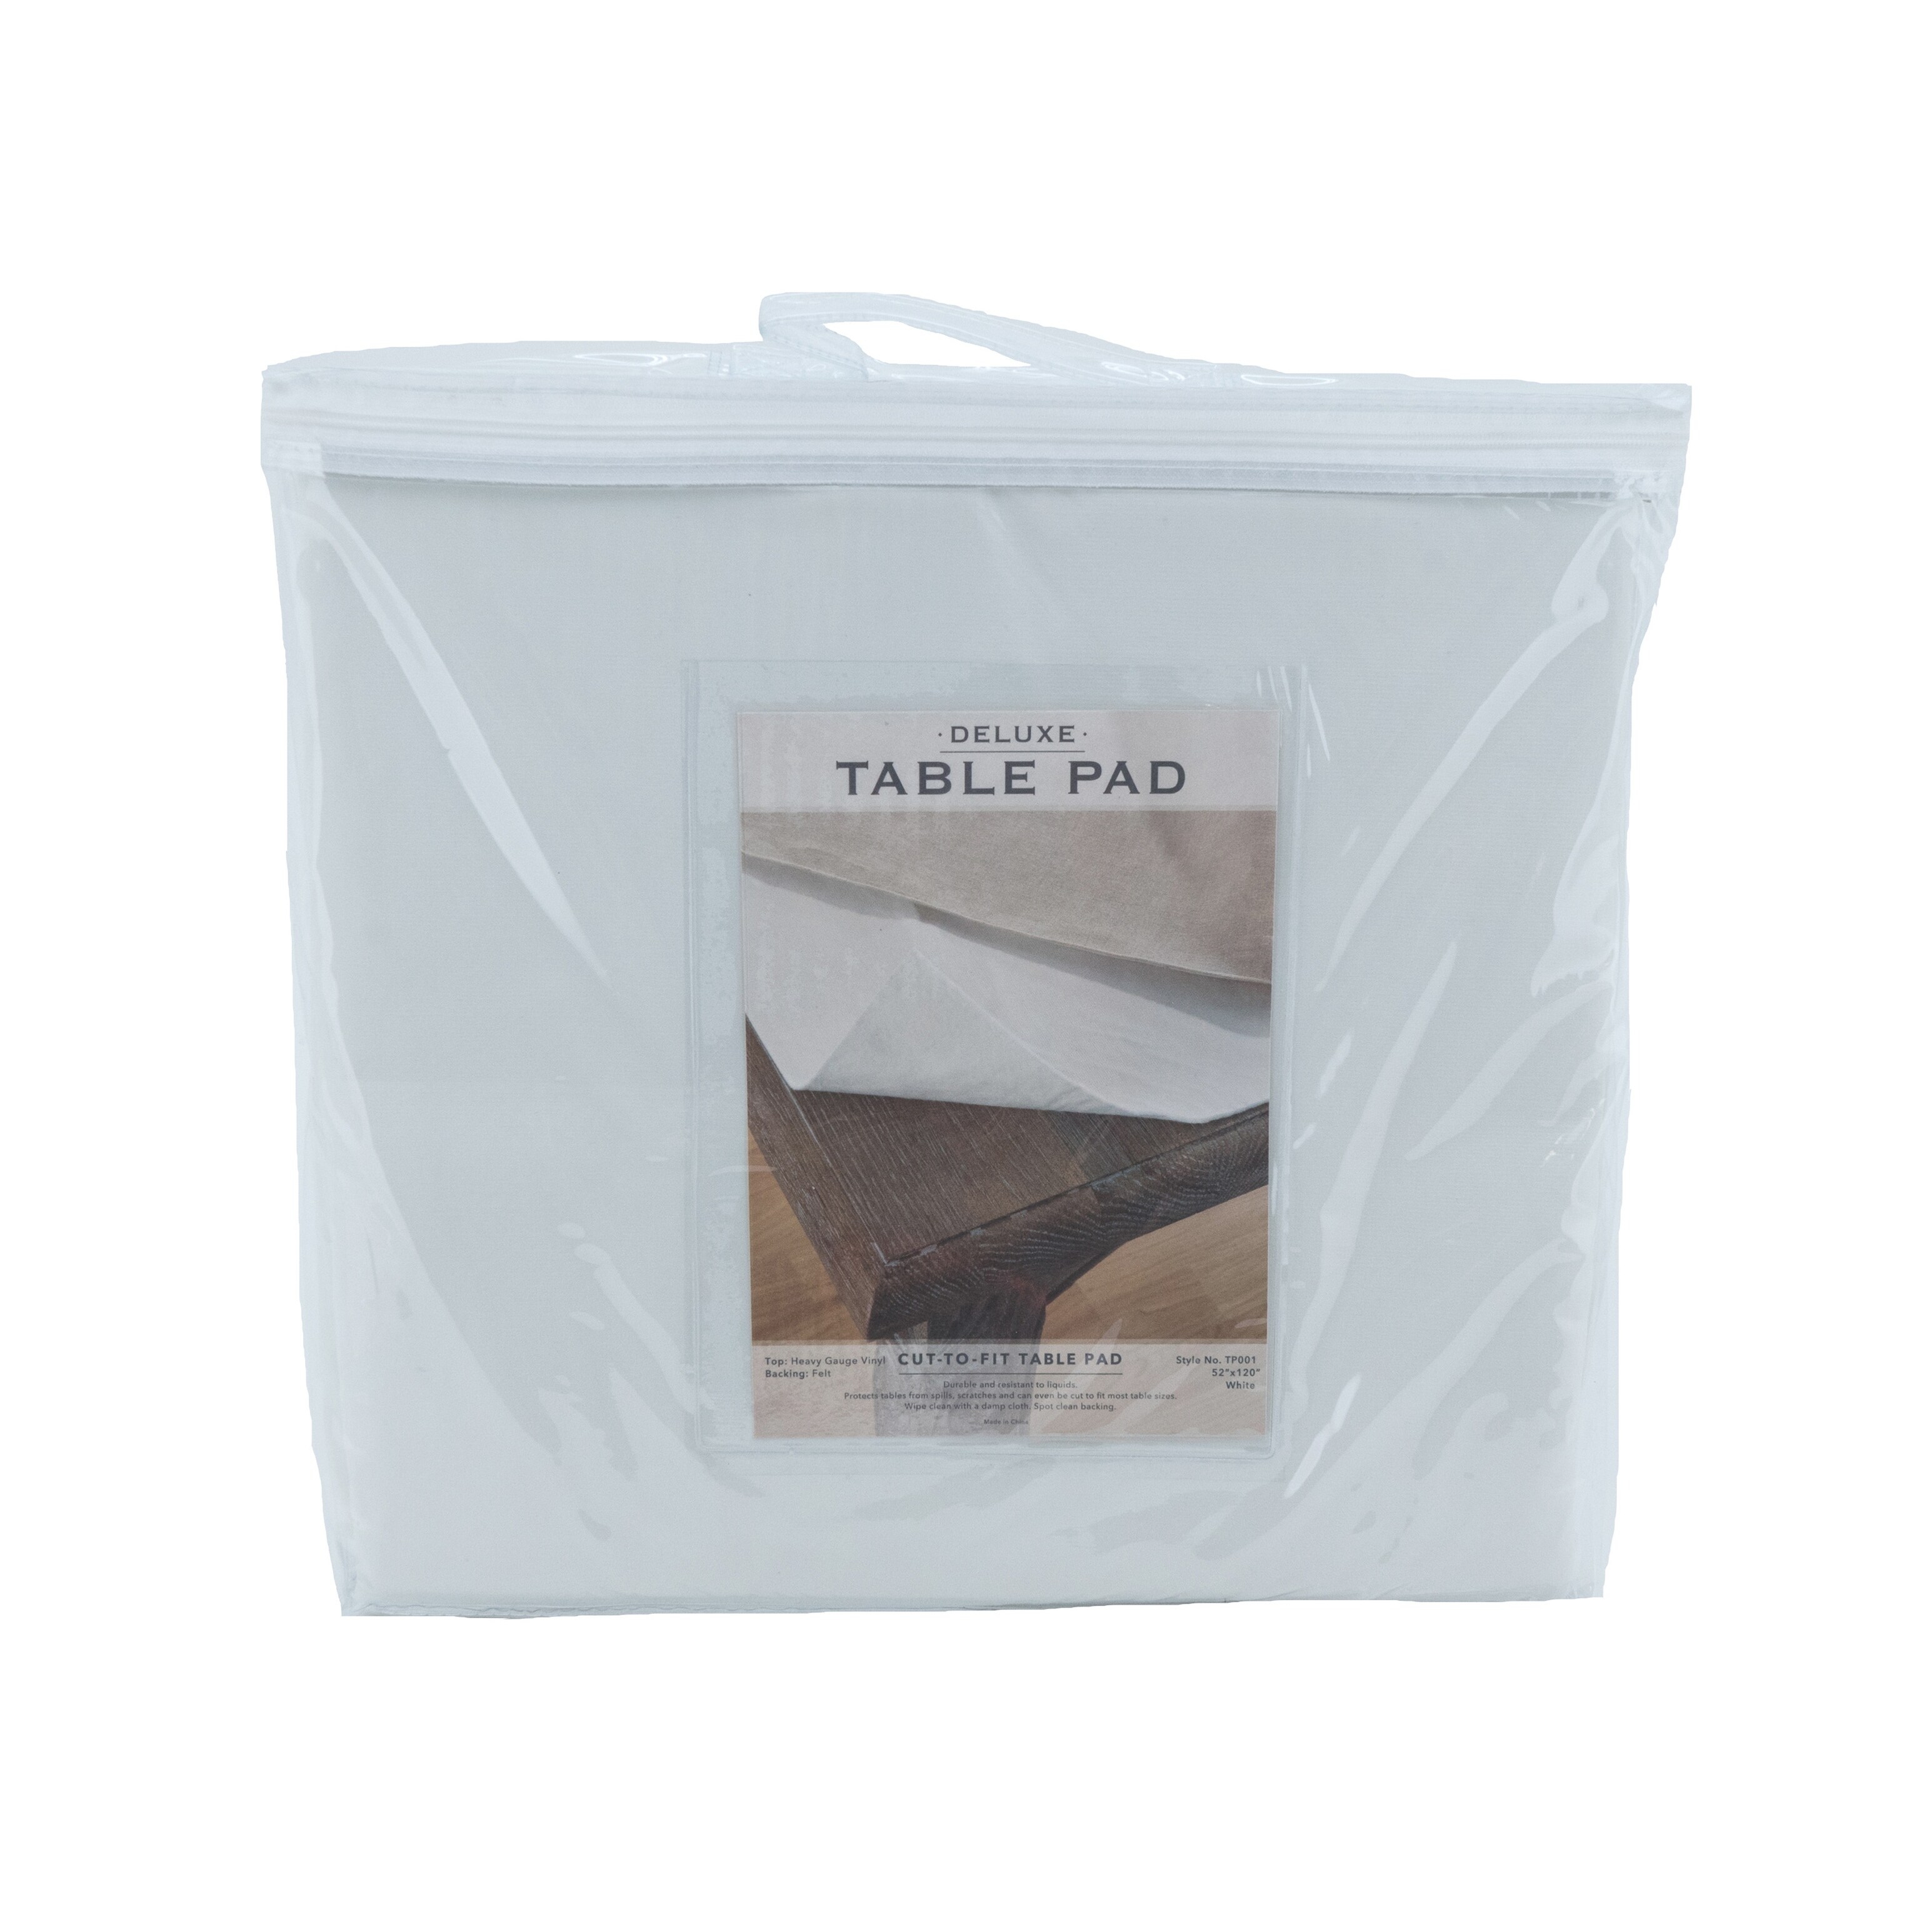 Vinyl Embossed Table Pad Protector - On Sale - Bed Bath & Beyond - 38366222